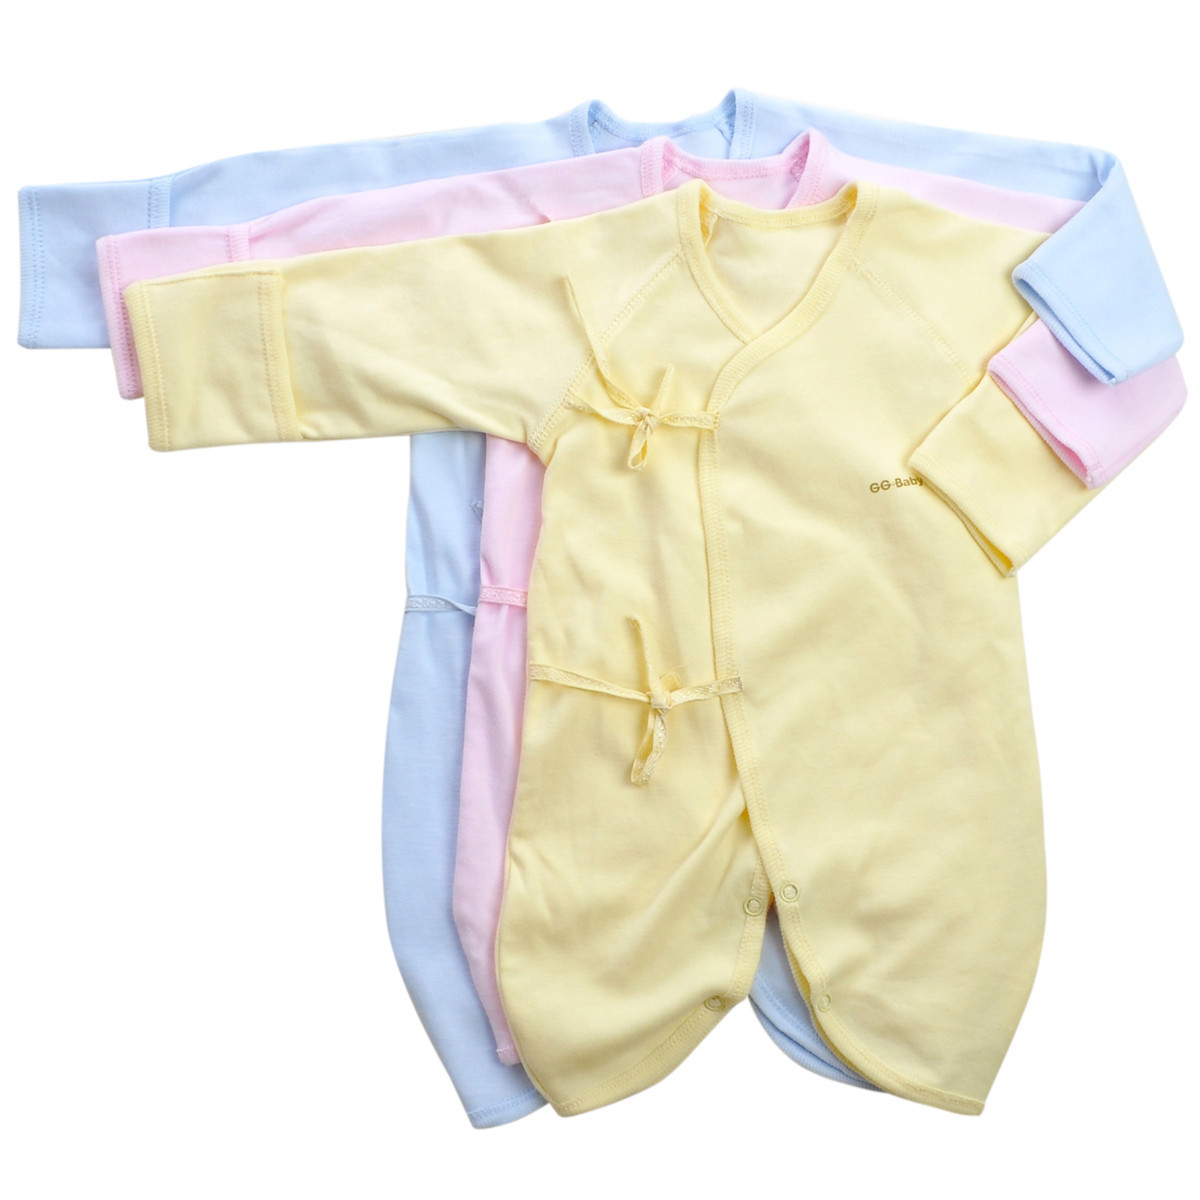 歌歌宝贝 夏季哈衣 新生儿 婴儿服饰 婴儿服装 婴儿连体衣 蝴蝶衣